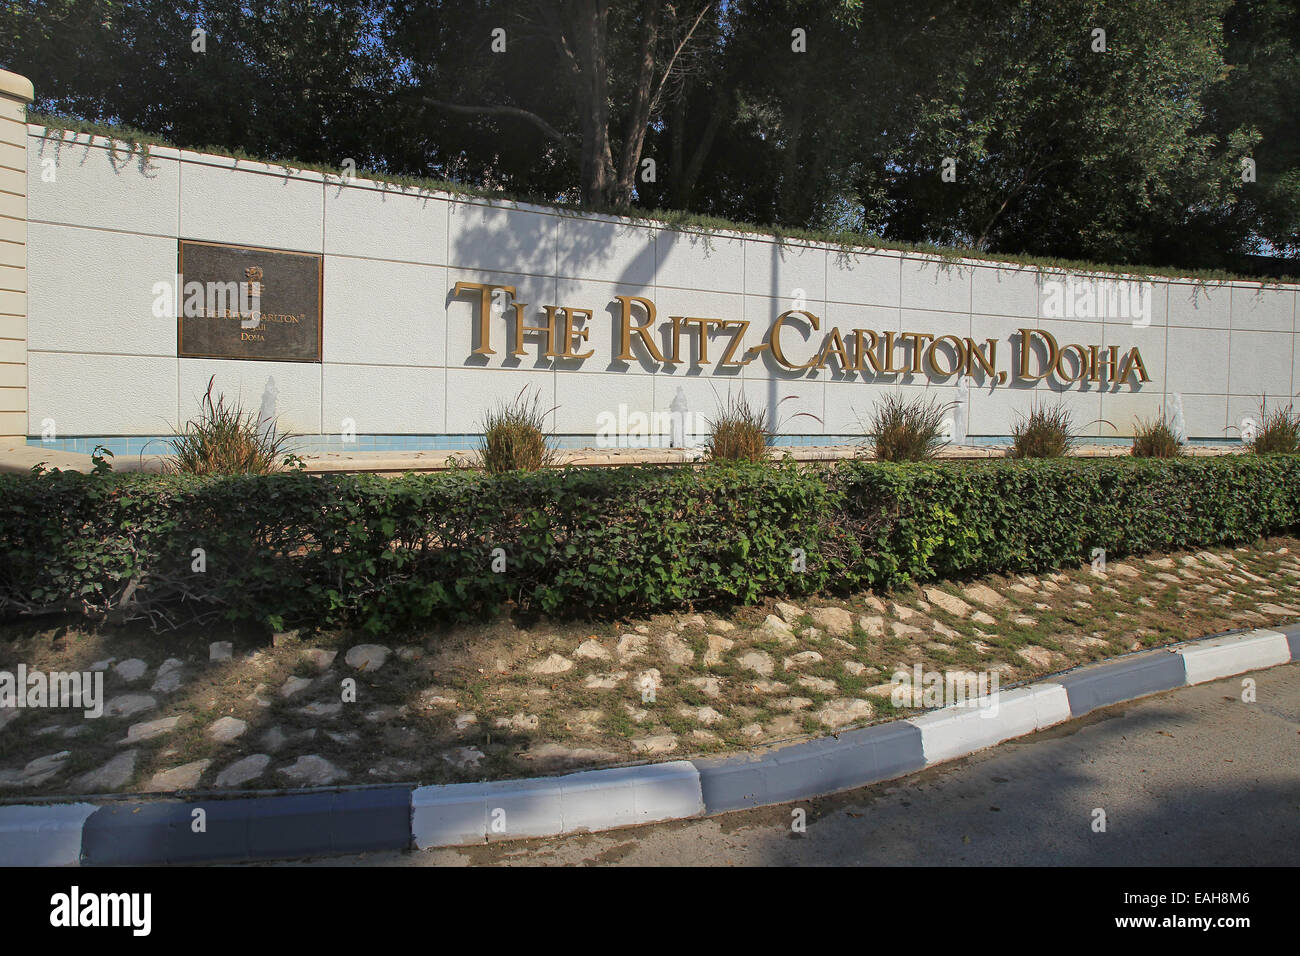 Eine allgemeine Ansicht zeigt den Namen des Hotels Ritz-Carlton, Doha, Katar vom unteren Ende der Auffahrt Stockfoto